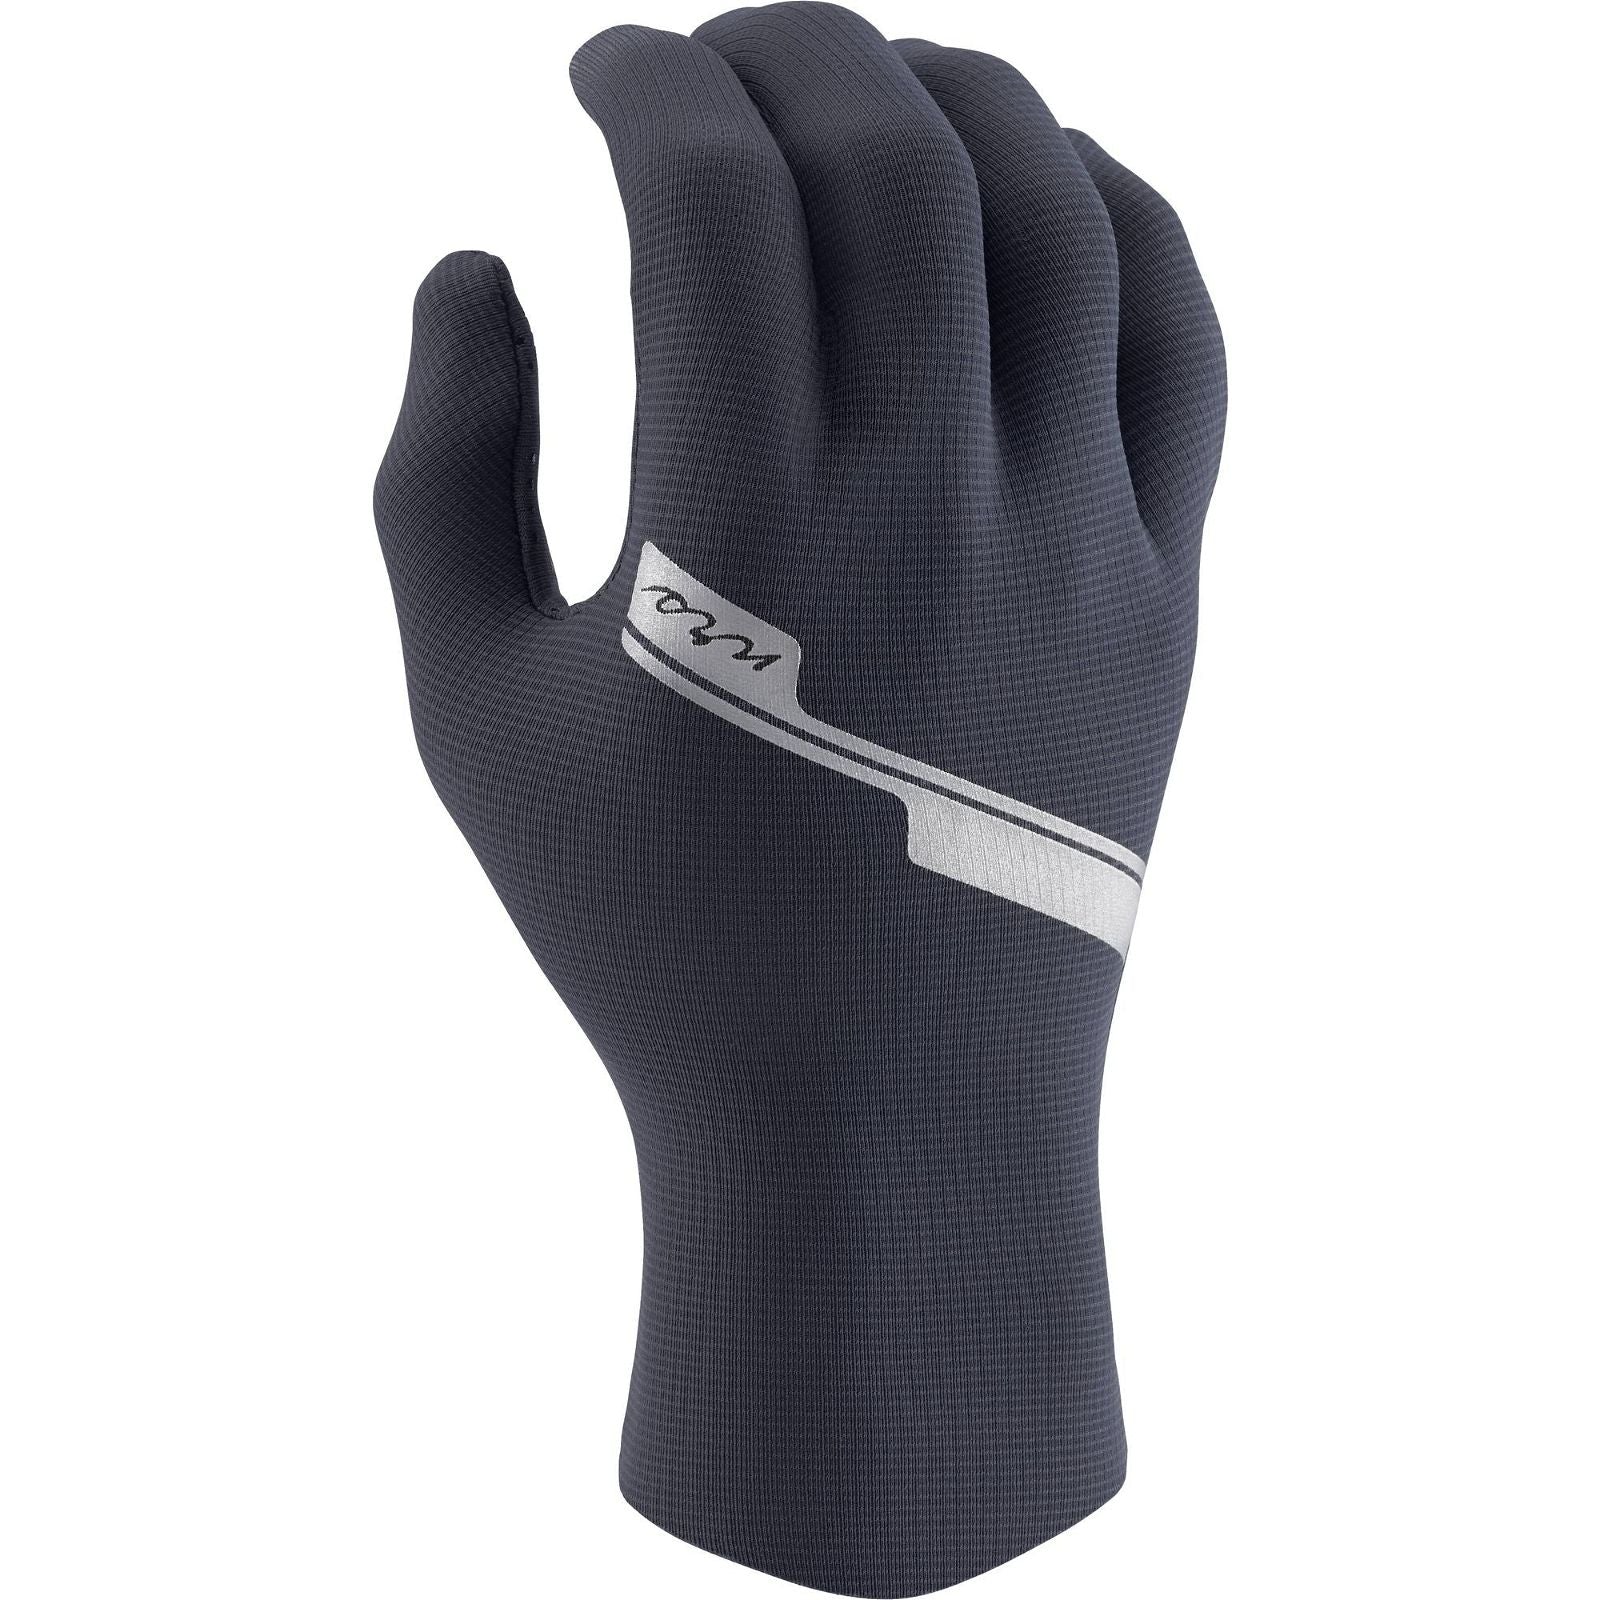   Women's HydroSkin Gloves  BestCoast Outfitters 